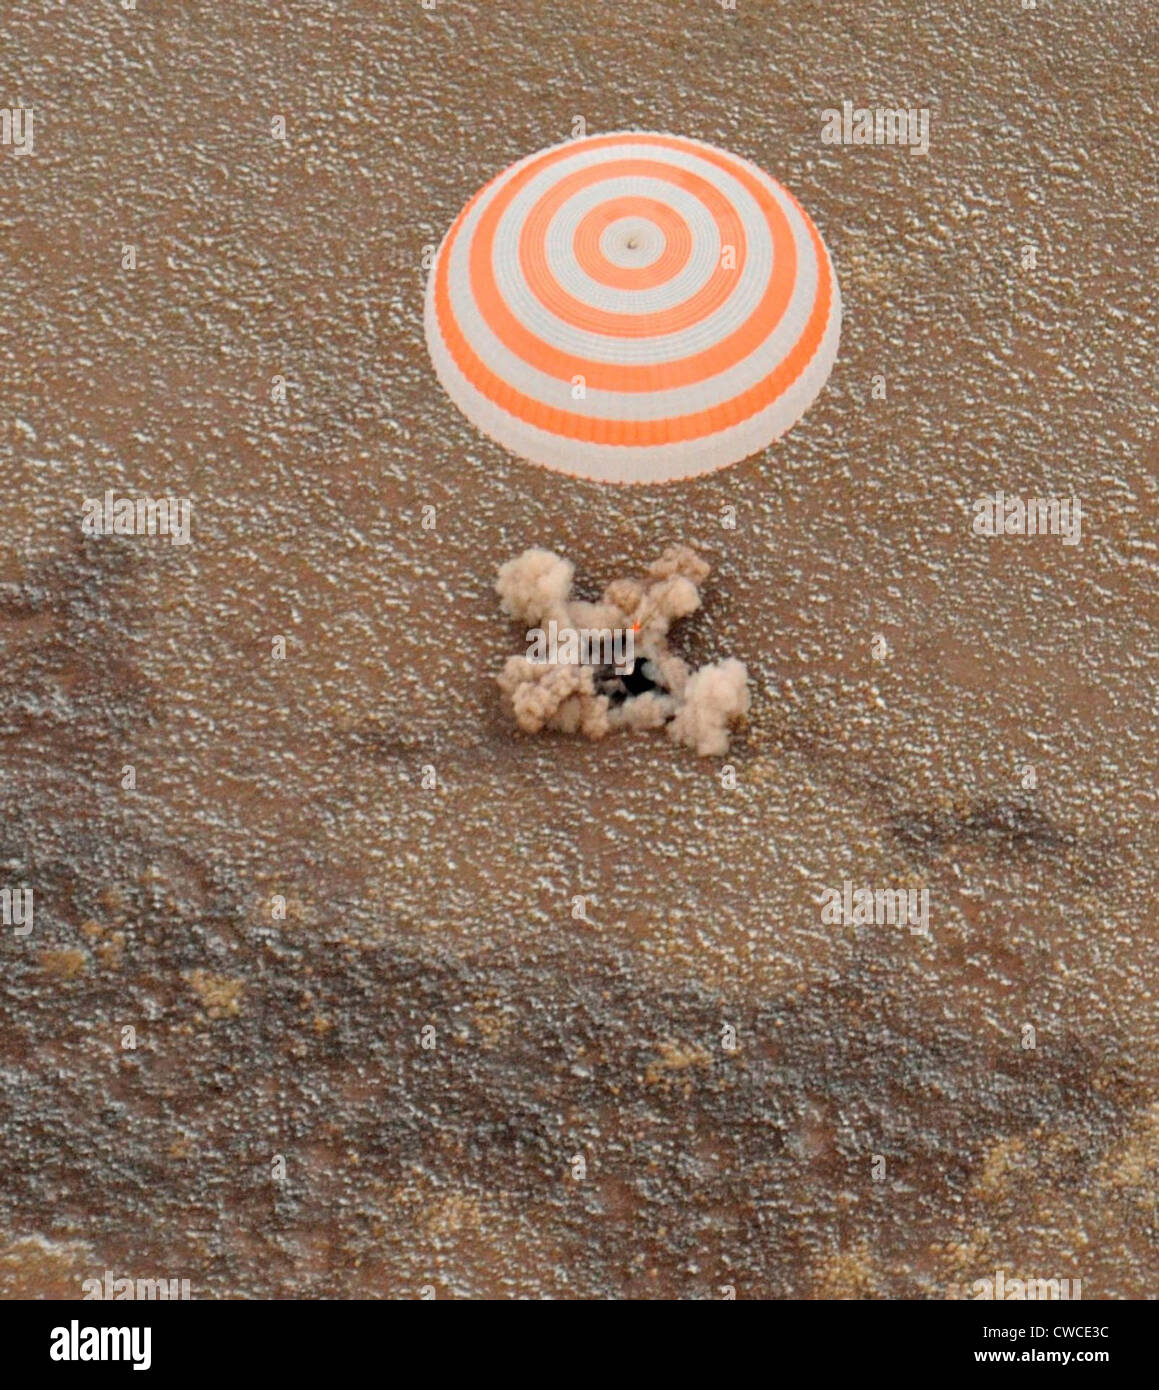 Le vaisseau spatial Soyouz transportant des terres de l'équipage de la Station spatiale internationale au Kazakhstan. L'équipage Expedition 25, les astronautes de la NASA Doug Banque D'Images